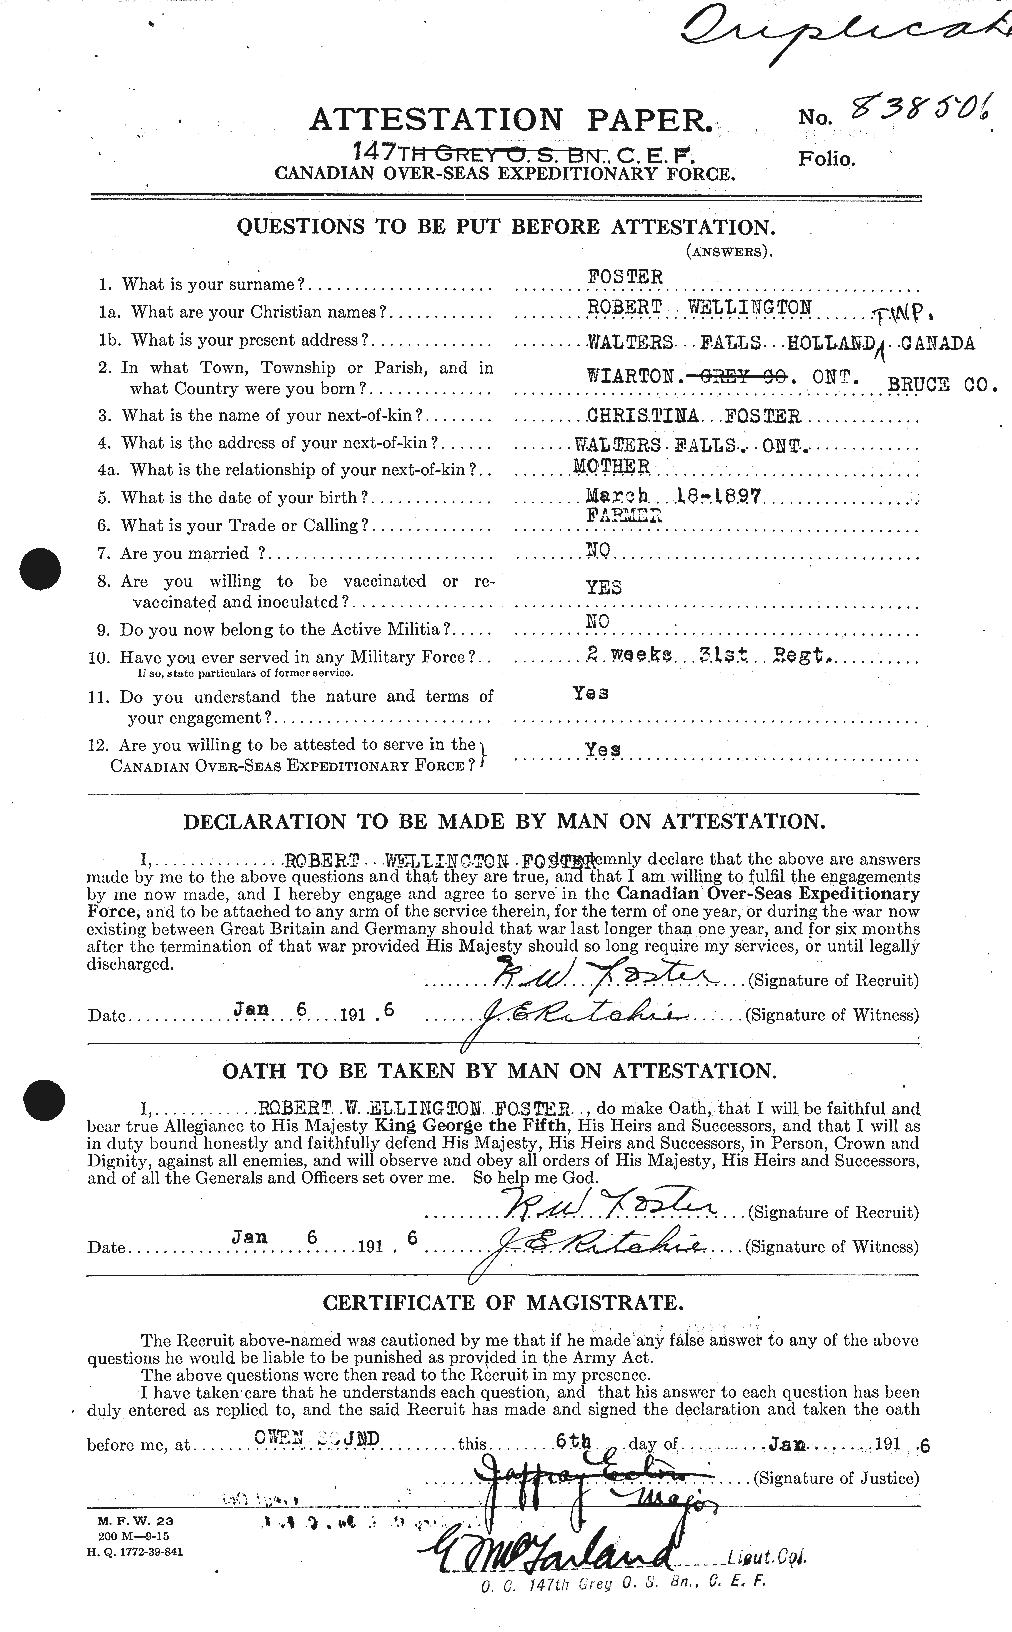 Dossiers du Personnel de la Première Guerre mondiale - CEC 335189a